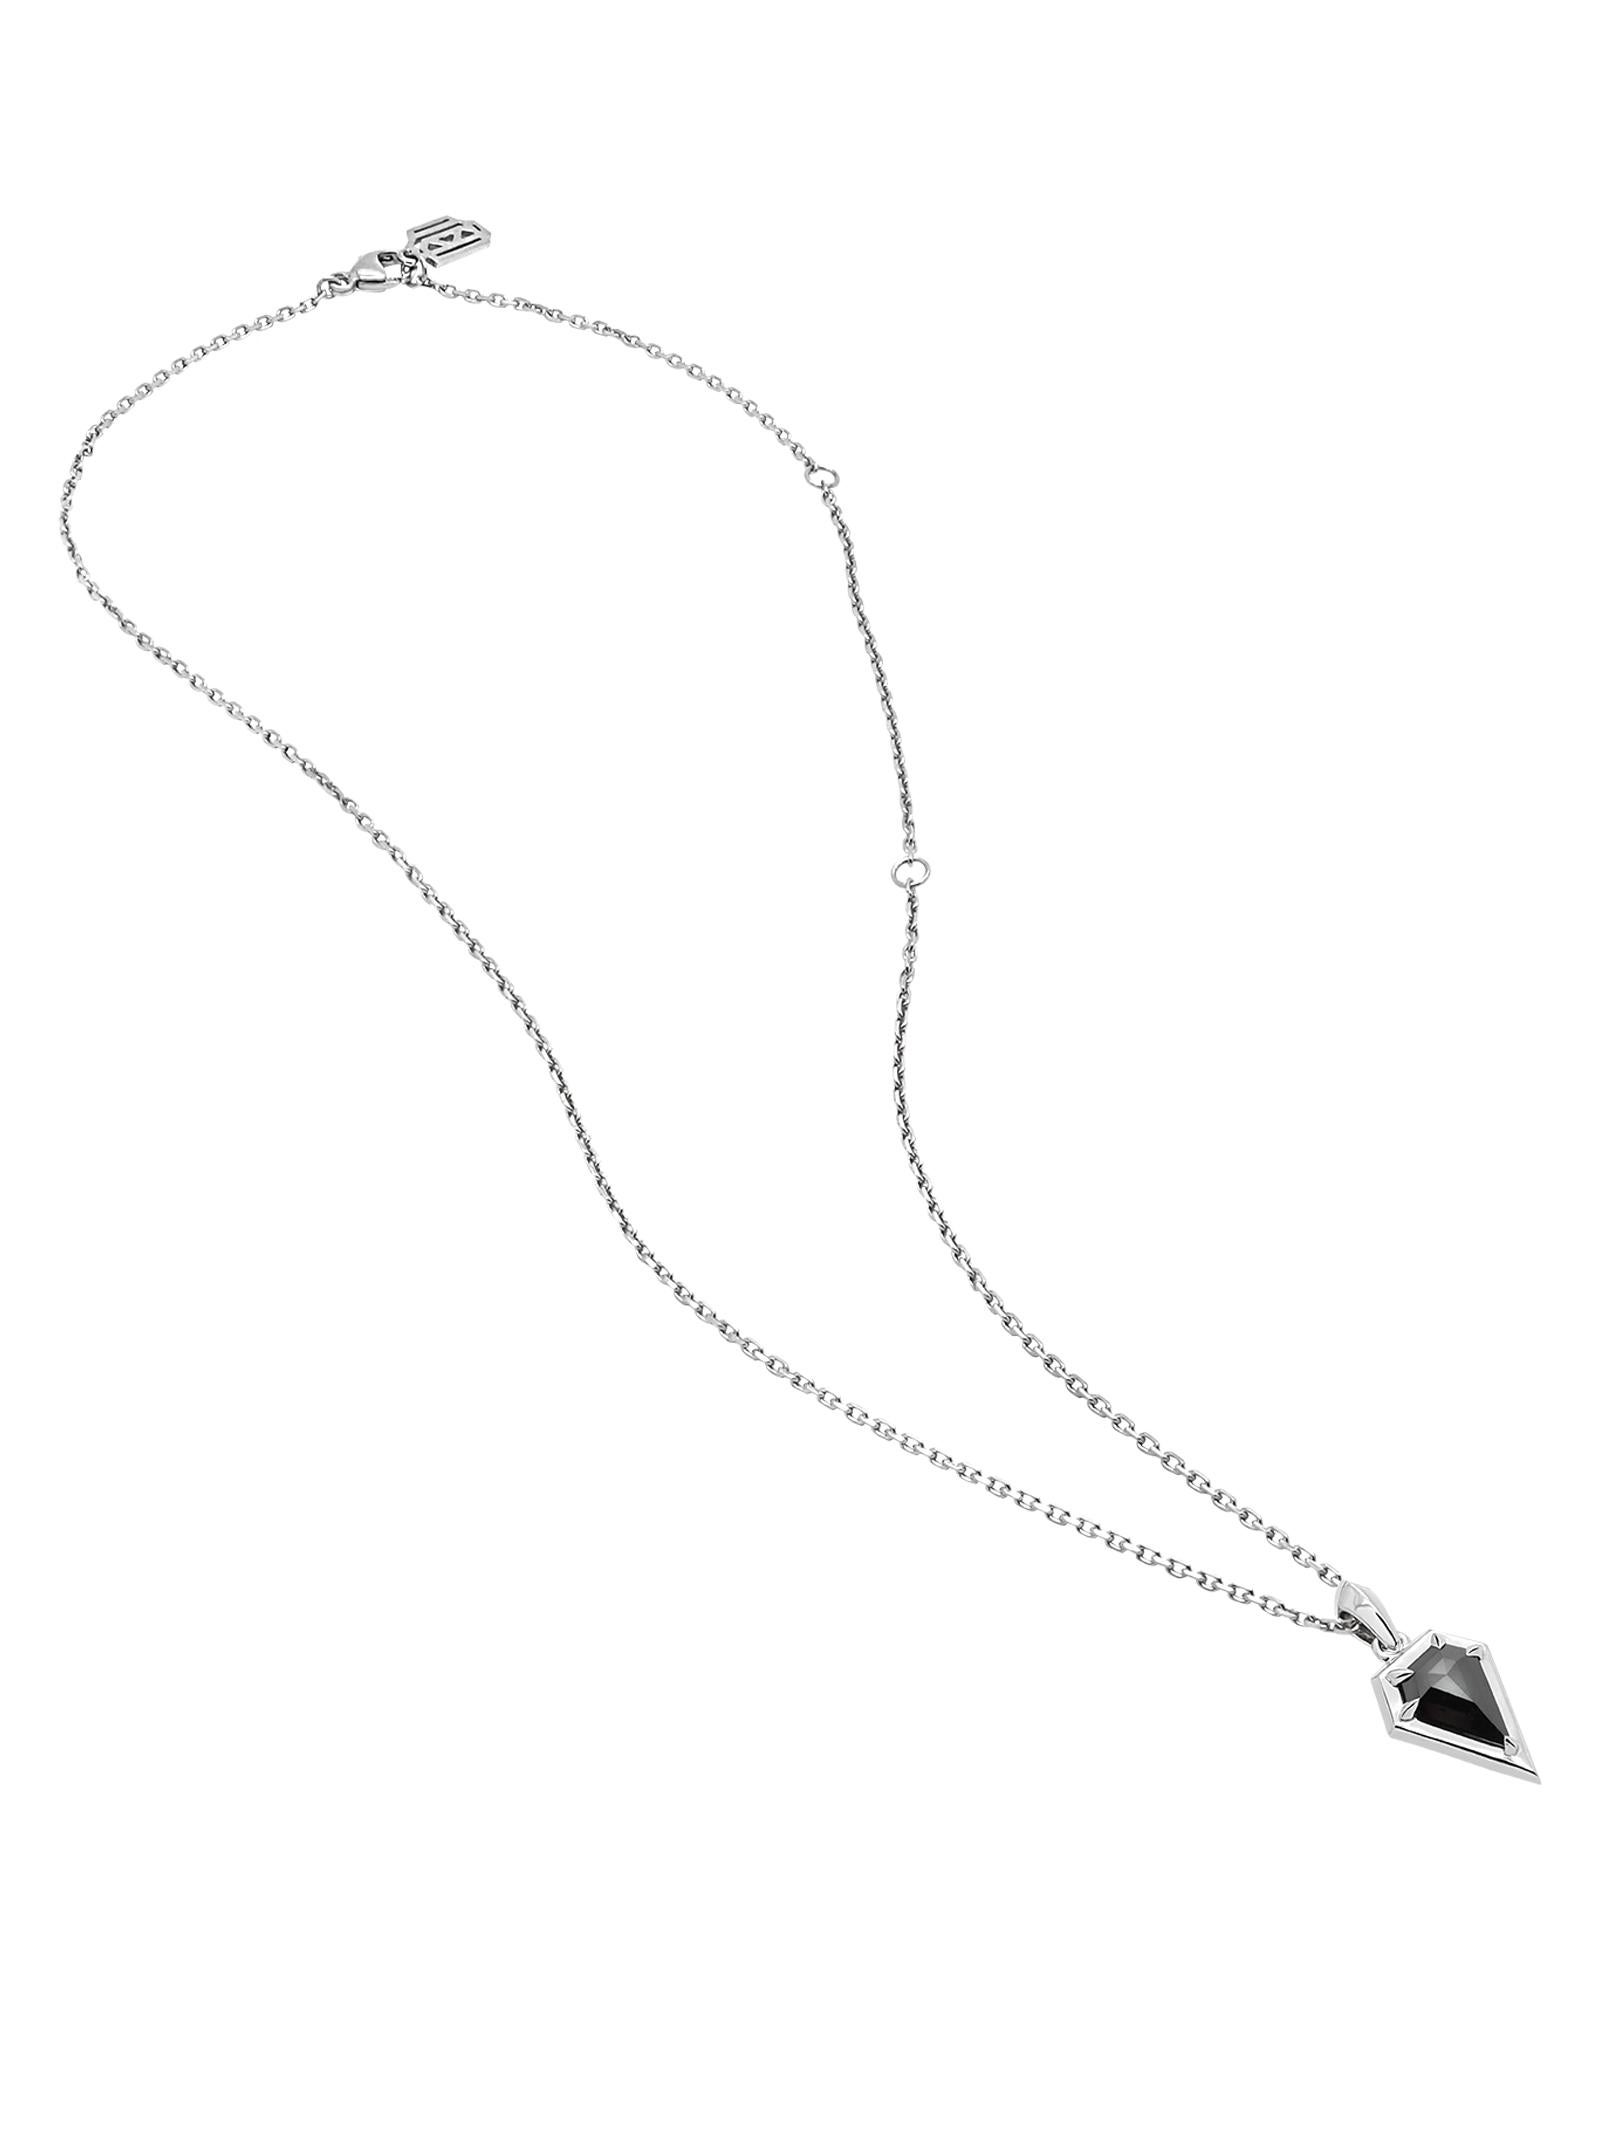 • collier pendentif amulette en or blanc 18 carats
• Diamant naturel noir taillé en bouclier, poids de 1,20 carat
• Longueur du pendentif, 22mm
• Comprend une chaîne câble ajustable en or blanc 18 carats de 1,5 mm, de 12 à 16 pouces, avec des